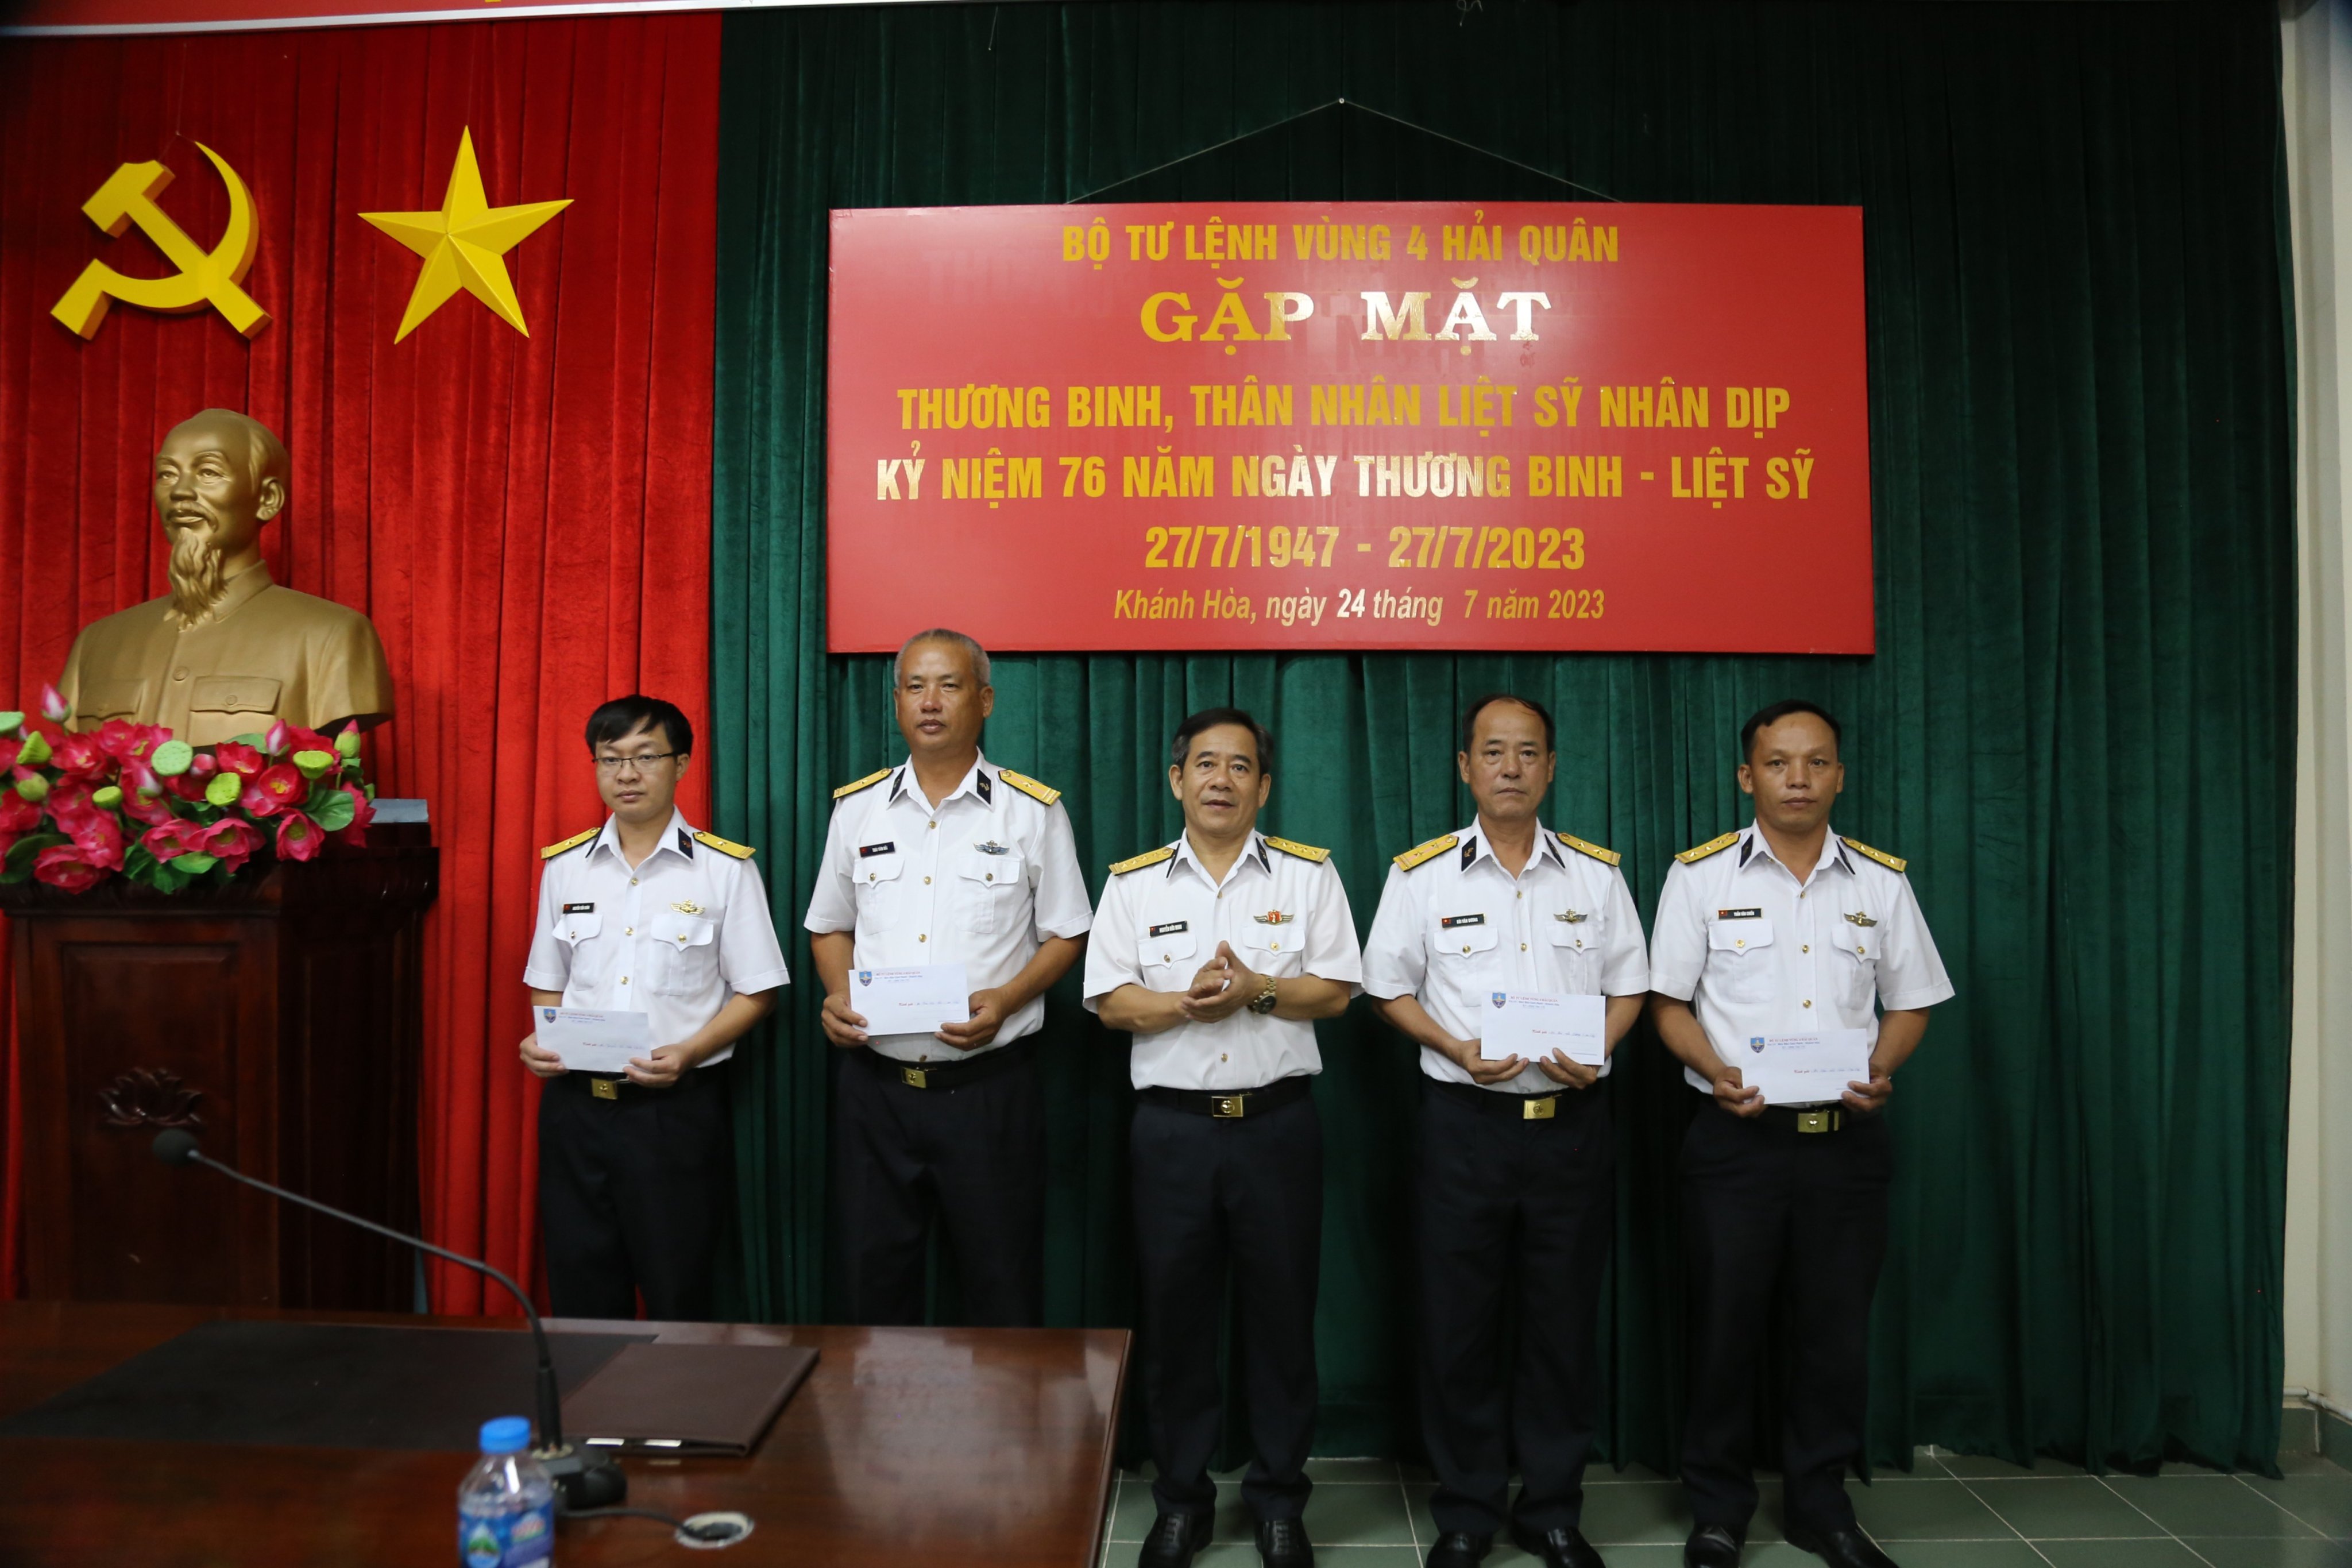 Dân sinh - Các đơn vị ở tỉnh Khánh Hòa tổ chức nhiều hoạt động tri ân dịp 27/7 (Hình 2).